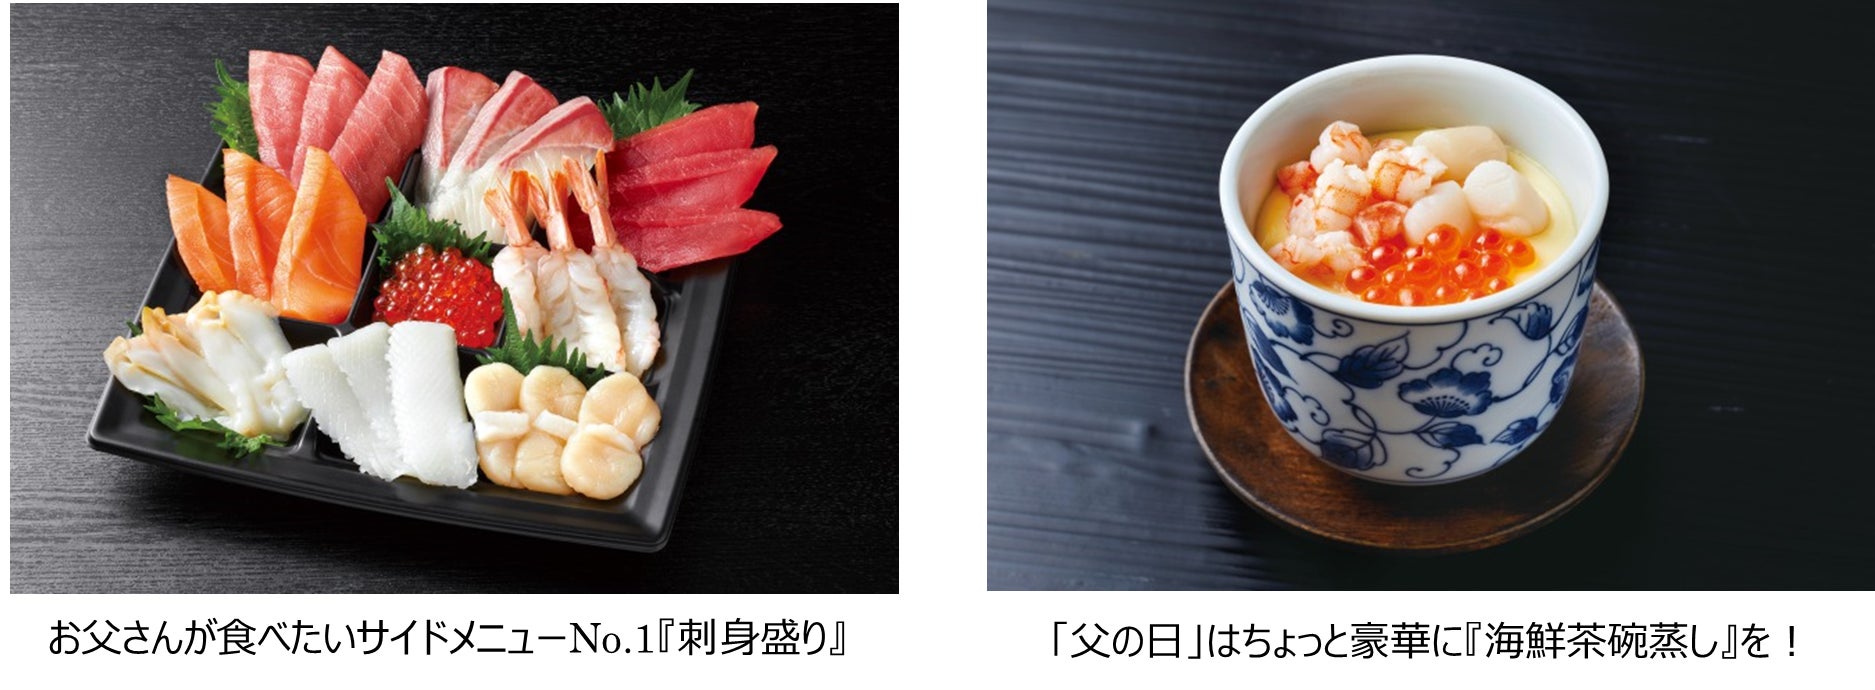 「銀のさら」お父さんが食べたい「サイドメニュー」1位は『刺身盛り』 今年の「父の日」はお寿司+サイドメニューで感謝を伝えませんか？